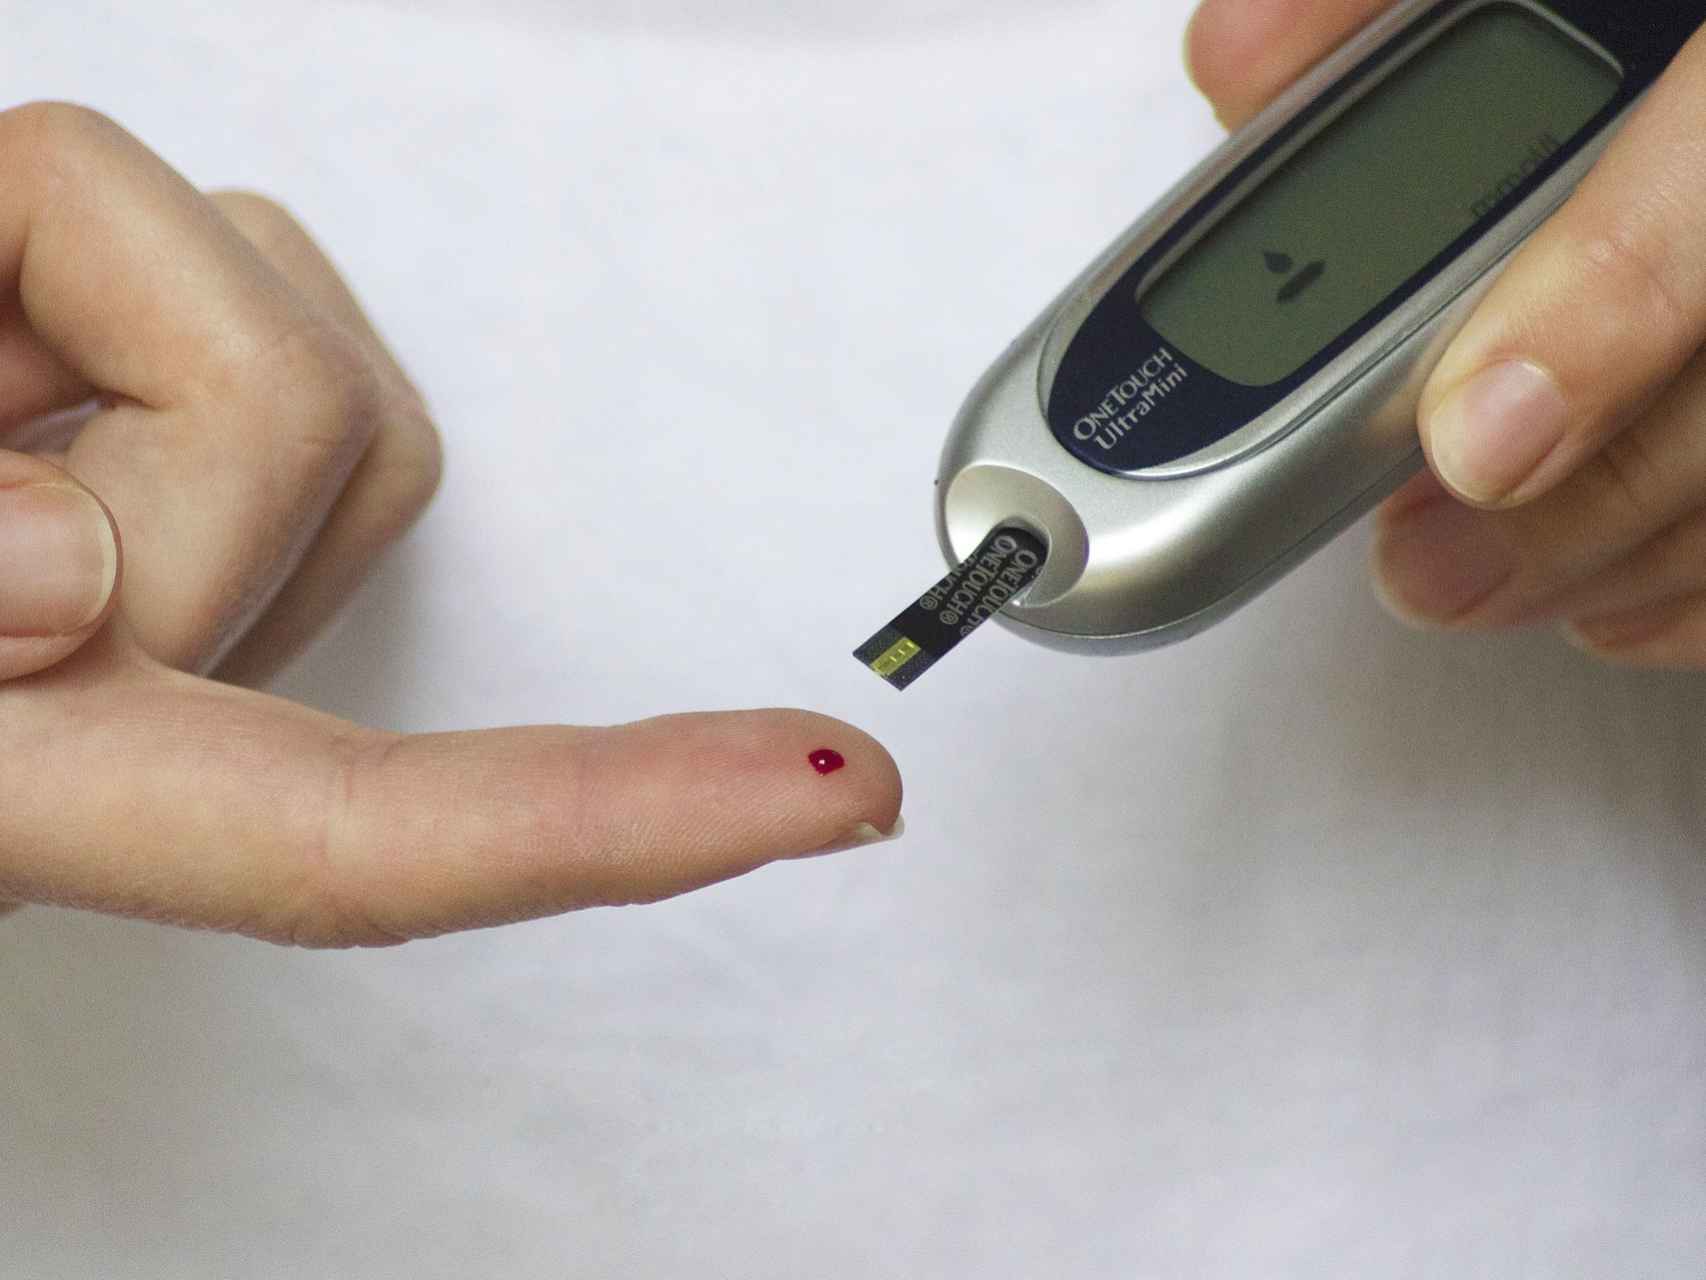 Una persona controla con una máquina sus niveles de glucosa en sangre.